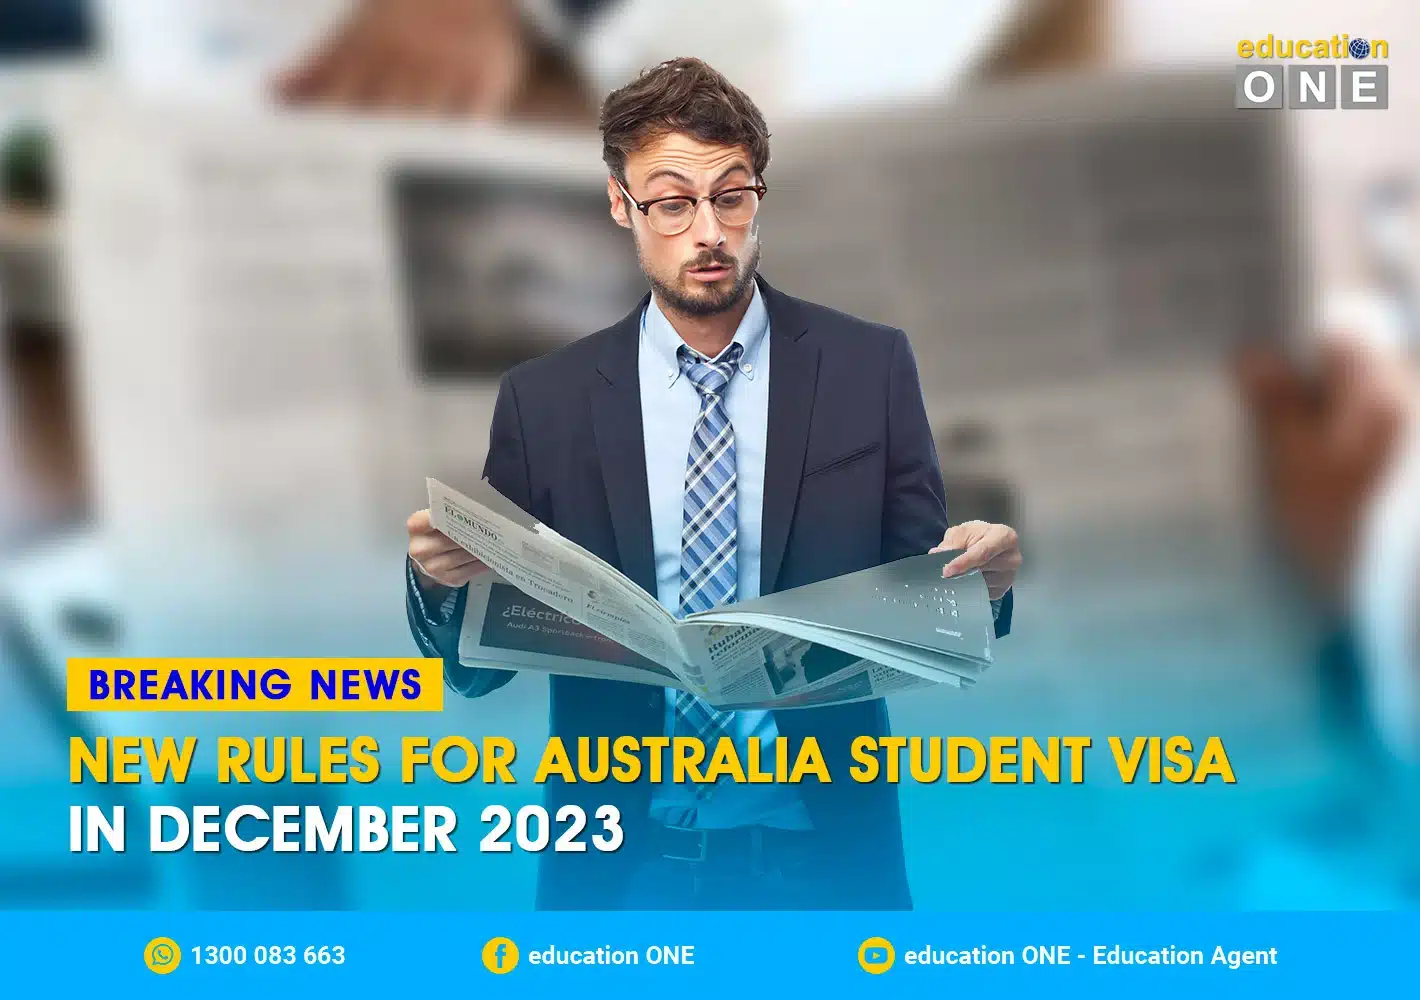 BREAKING NEWS: New Rules for Australia Student Visa 2023